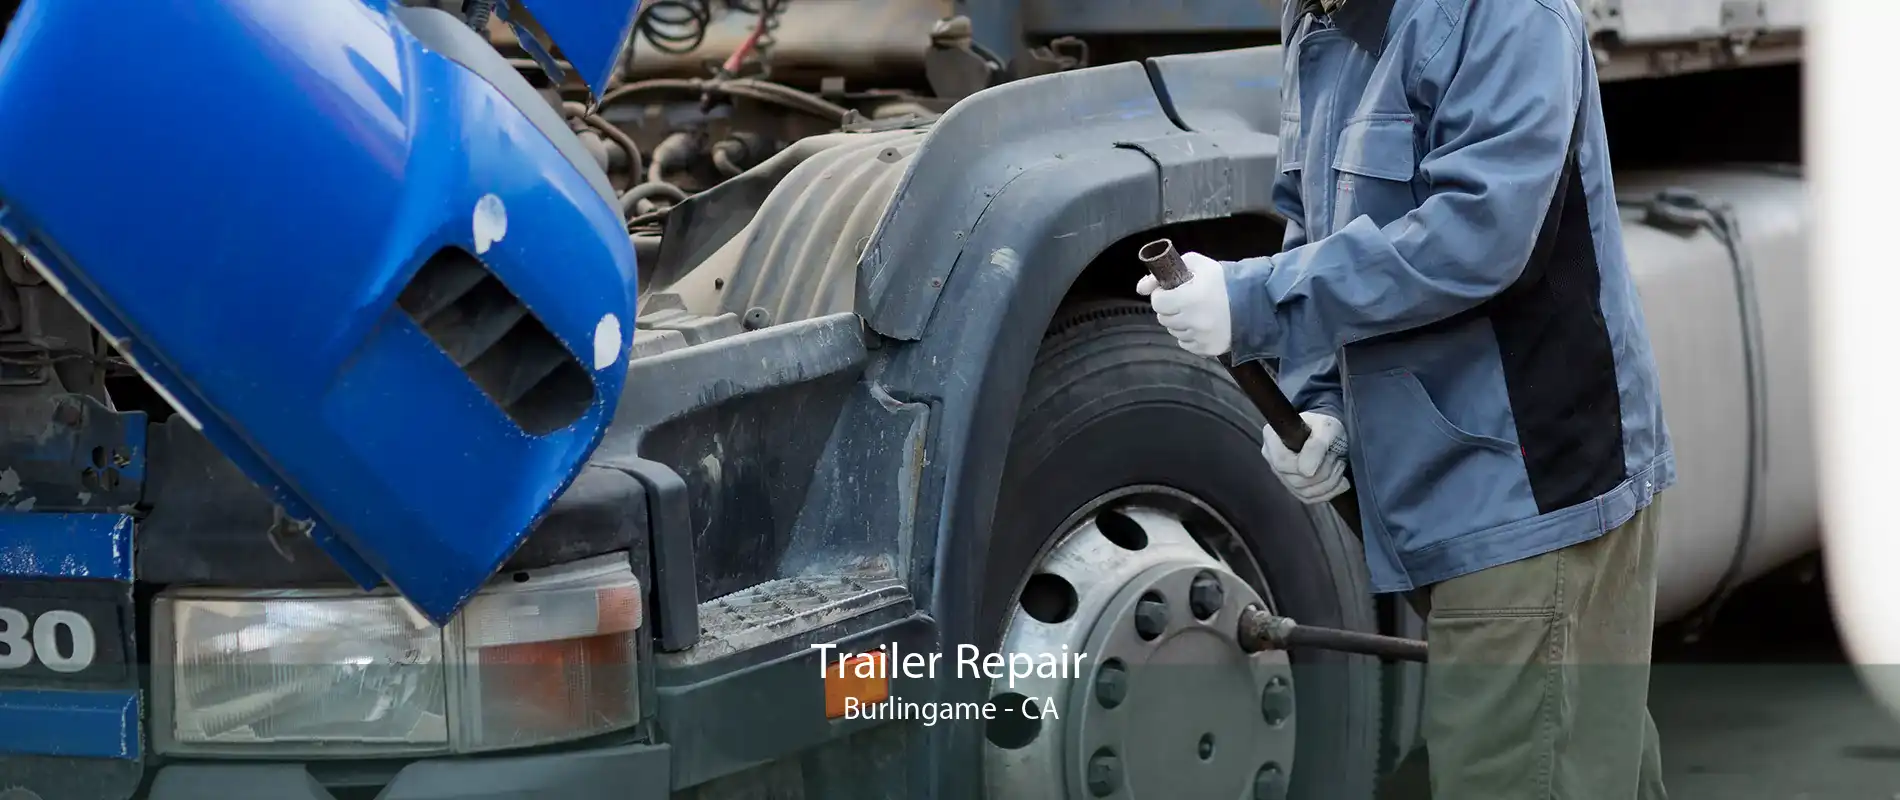 Trailer Repair Burlingame - CA